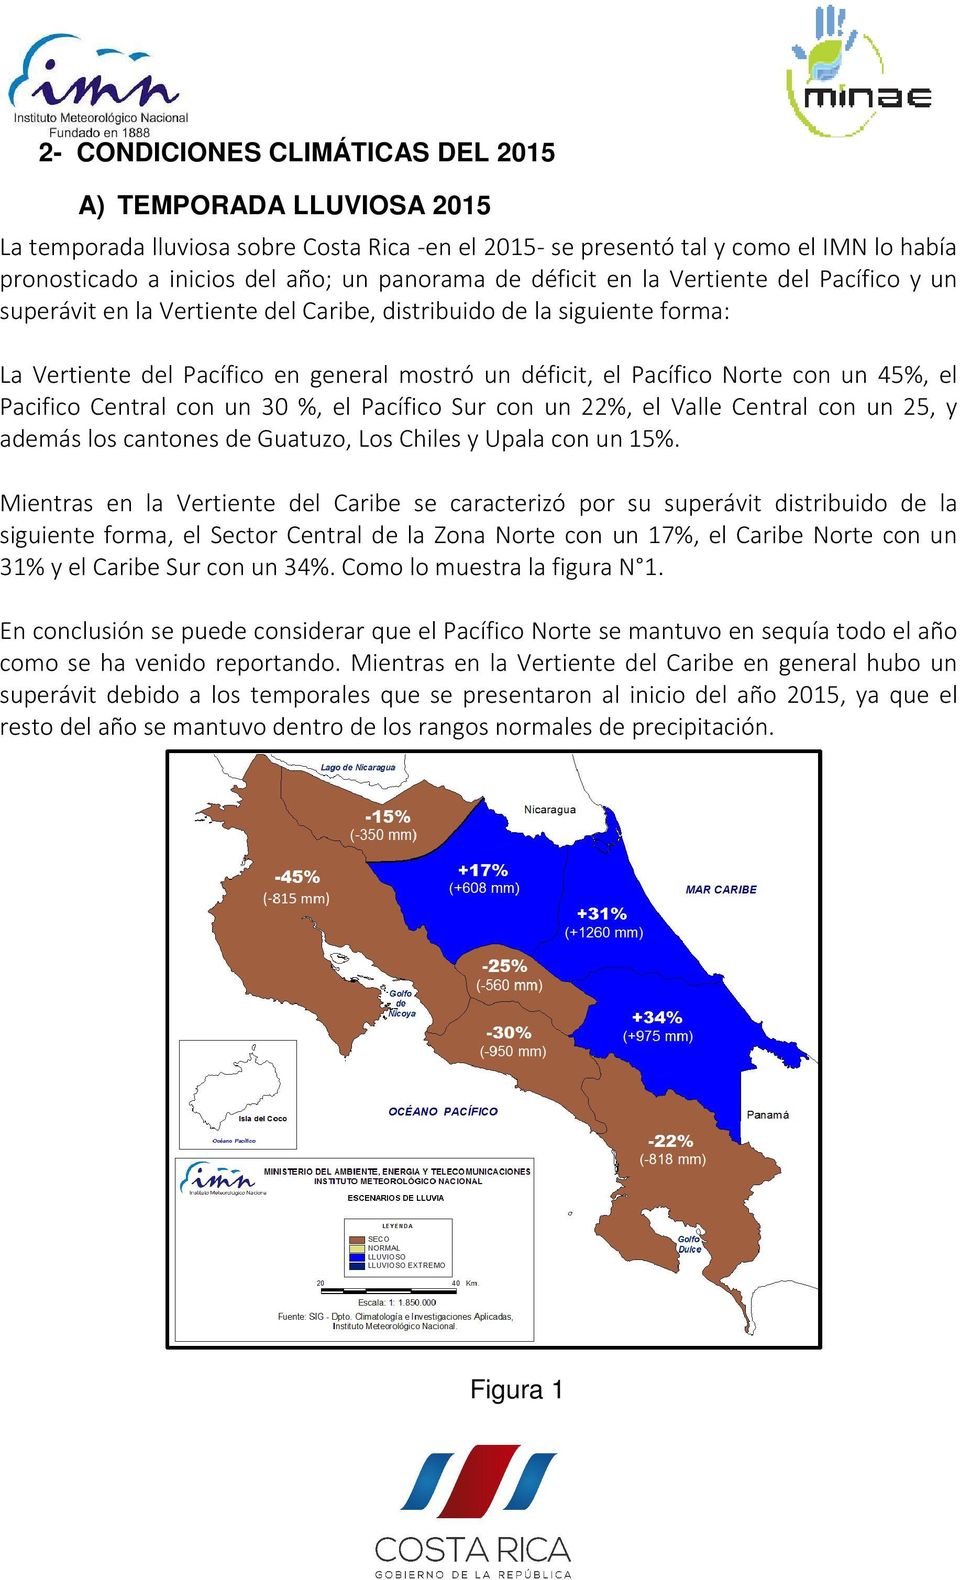 45%, el Pacifico Central con un 30 %, el Pacífico Sur con un 22%, el Valle Central con un 25, y además los cantones de Guatuzo, Los Chiles y Upala con un 15%.